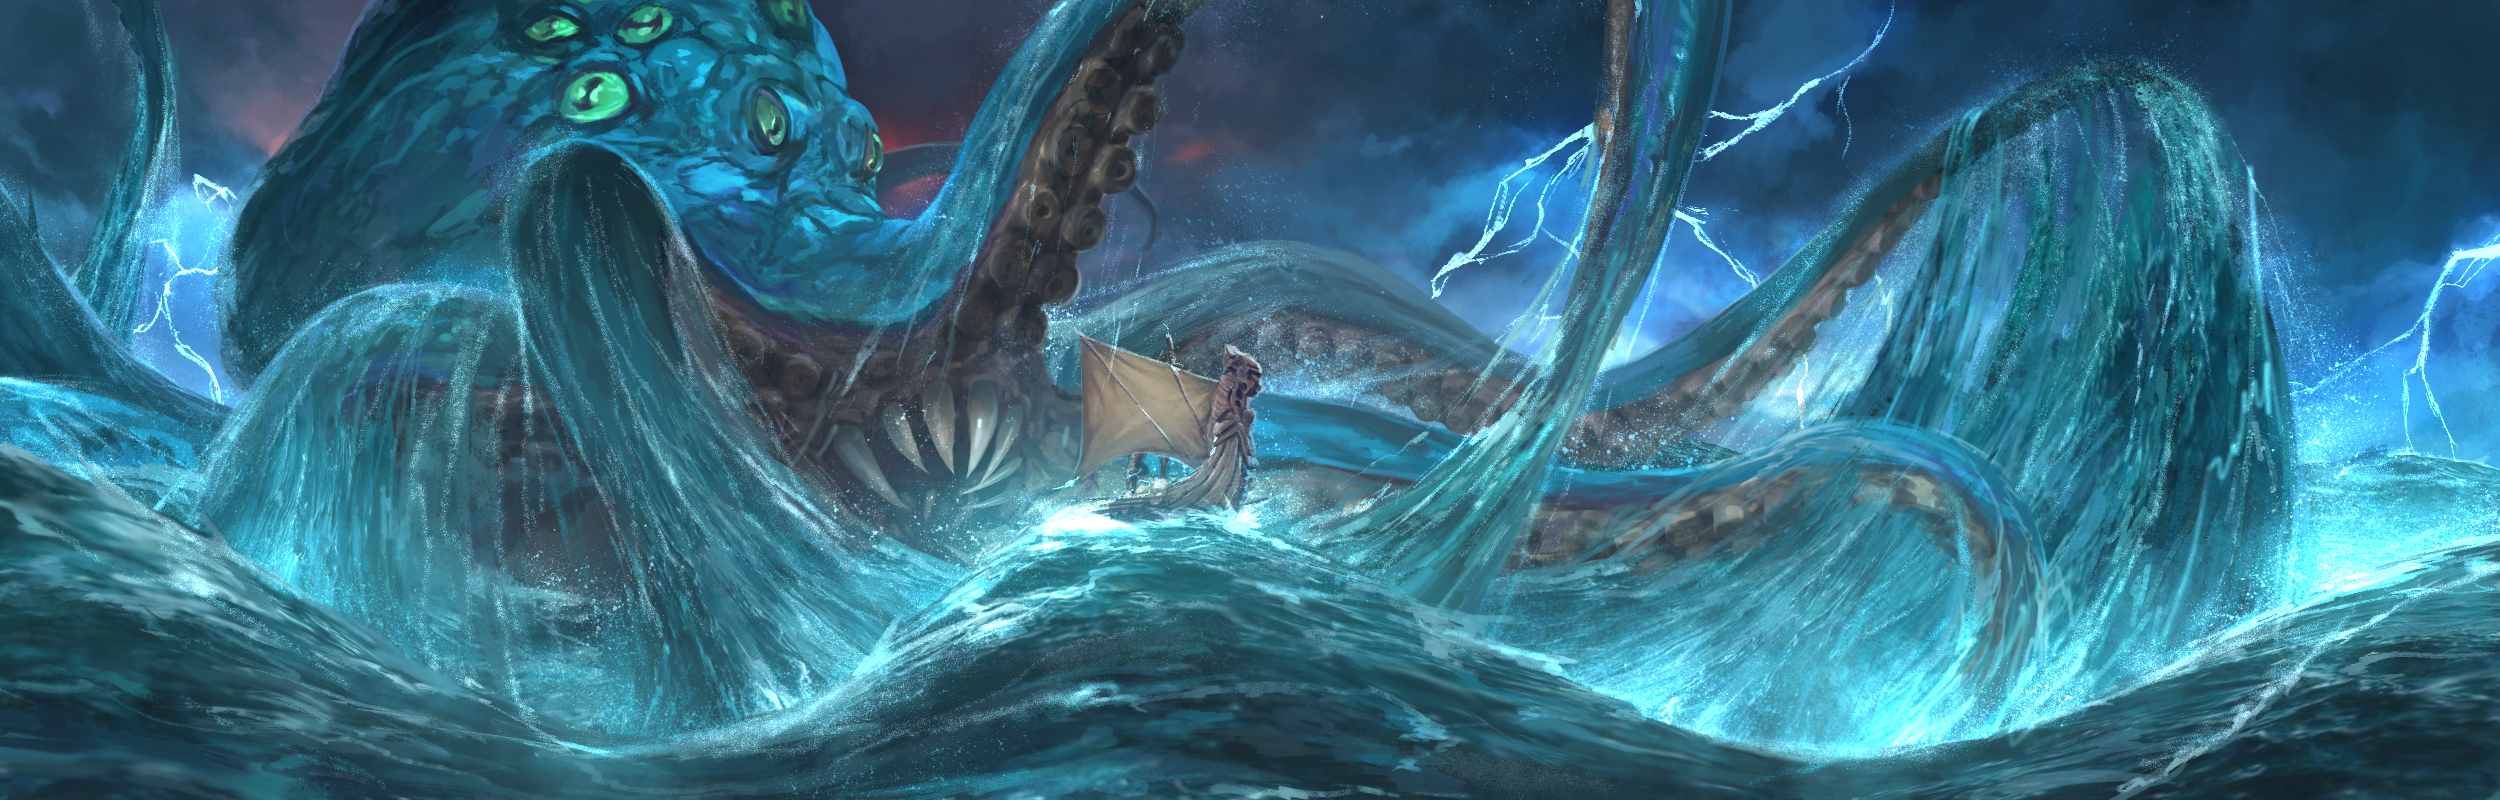 Storm Warden's Sea Monster